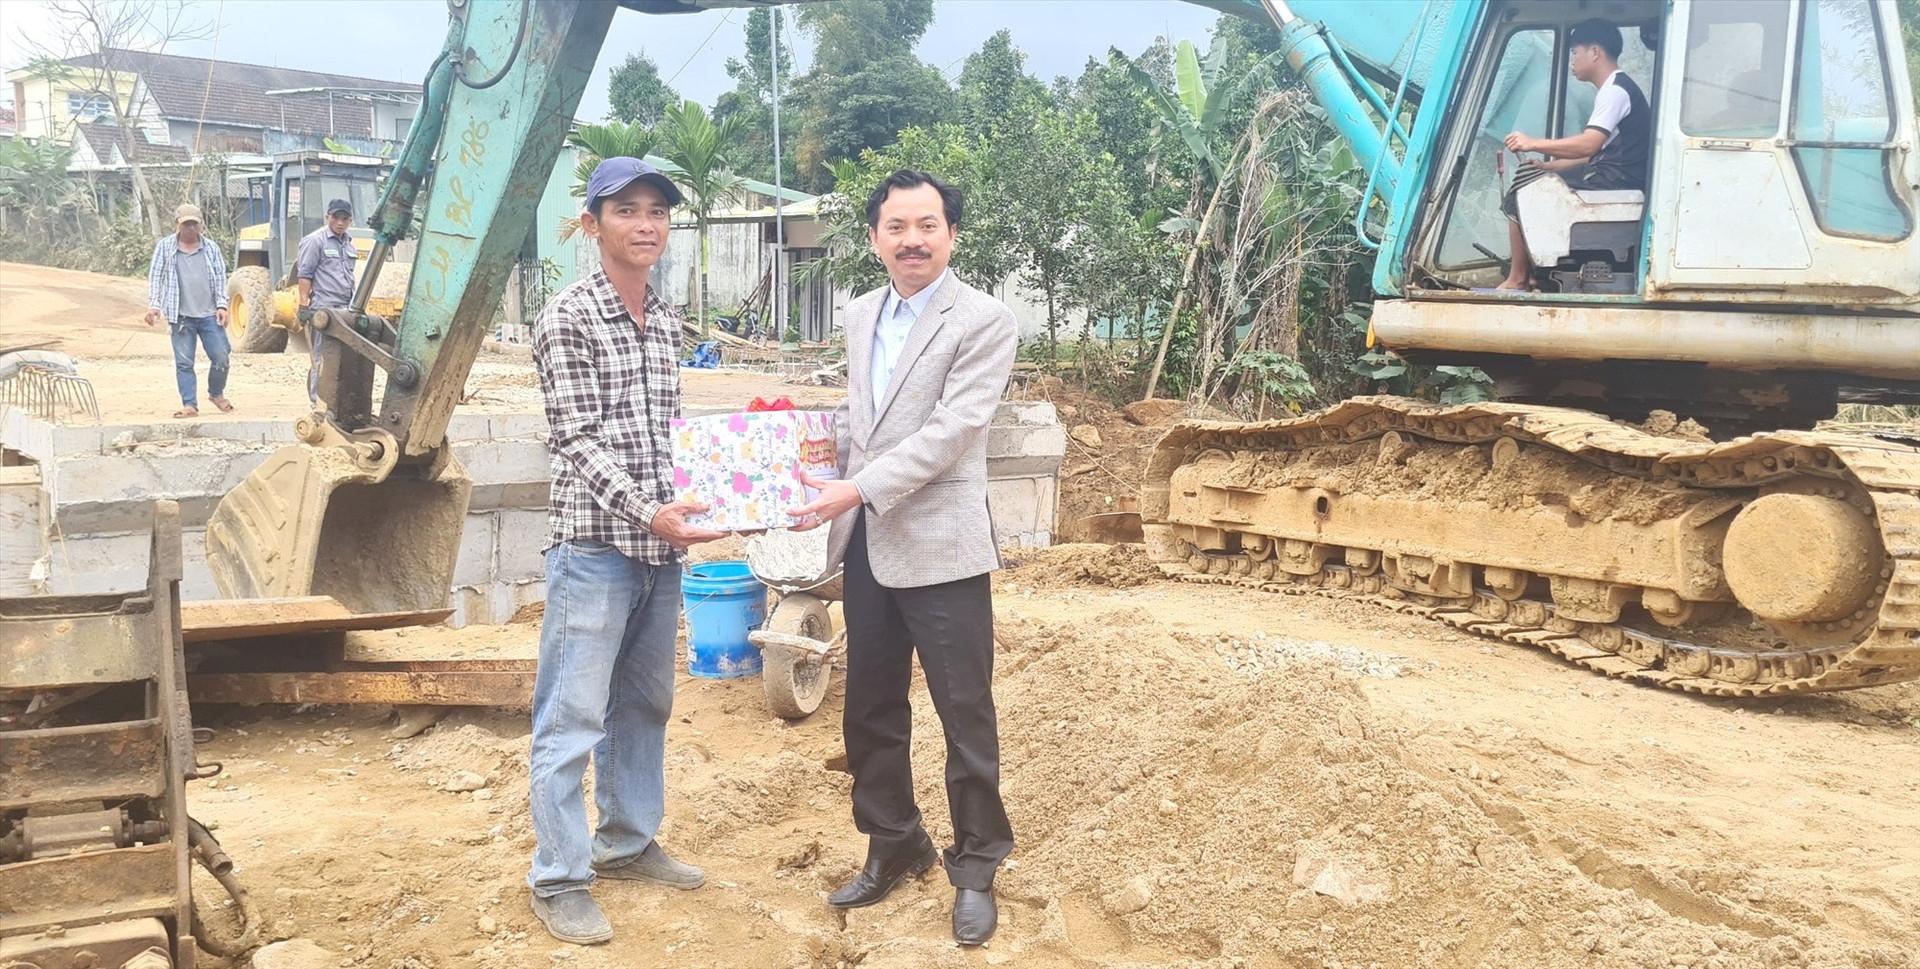 Phó Giám đốc Sở GTVT - ông Hồ Quang Minh tặng quà động viên công nhân của Công ty TNHH Kỳ Trung đang sửa chữa tuyến đường ĐT614 (Thăng Bình - Tiên Phước). Ảnh: CT